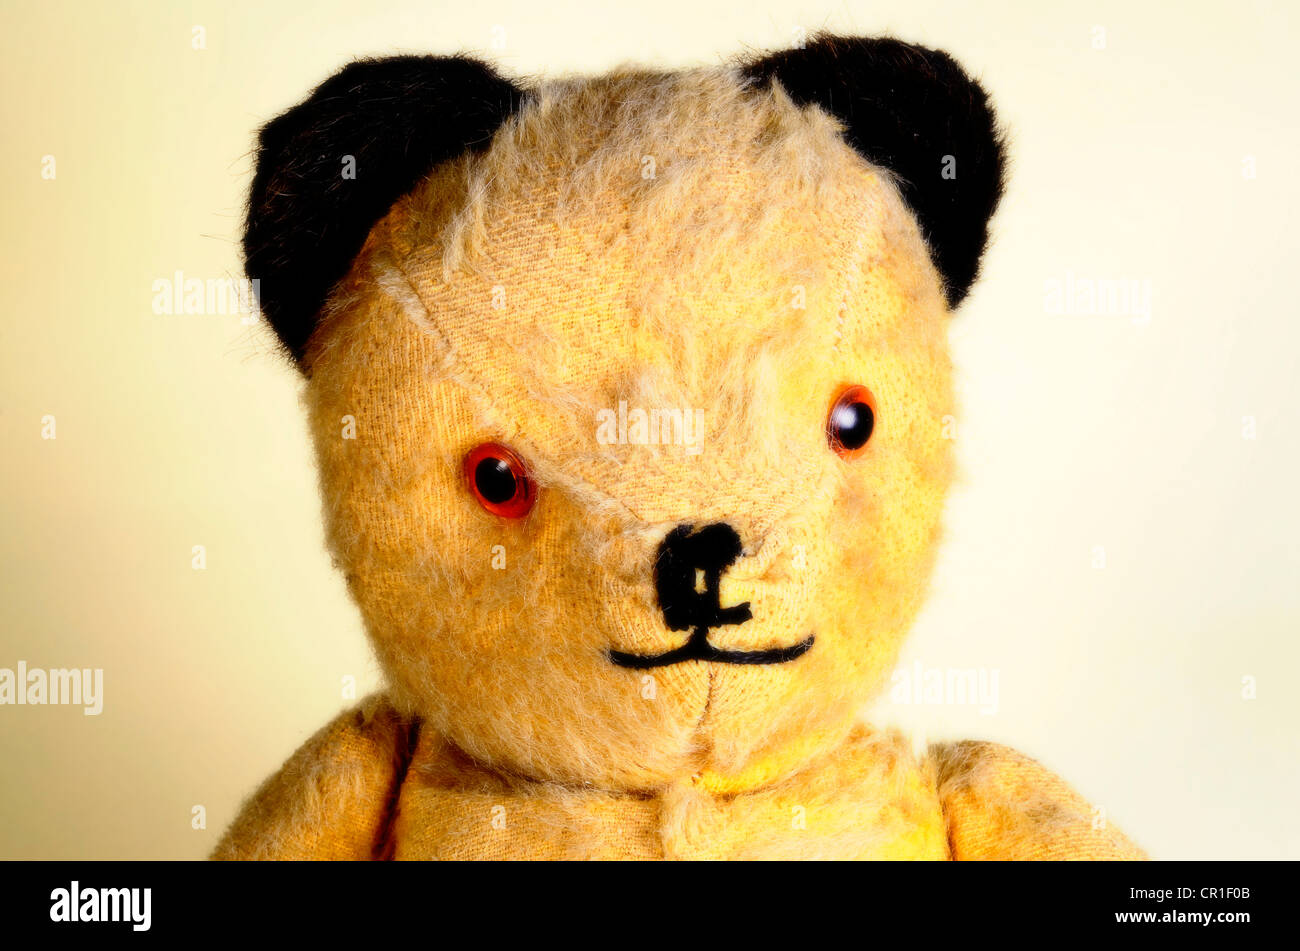 Old teddy bear Stock Photo